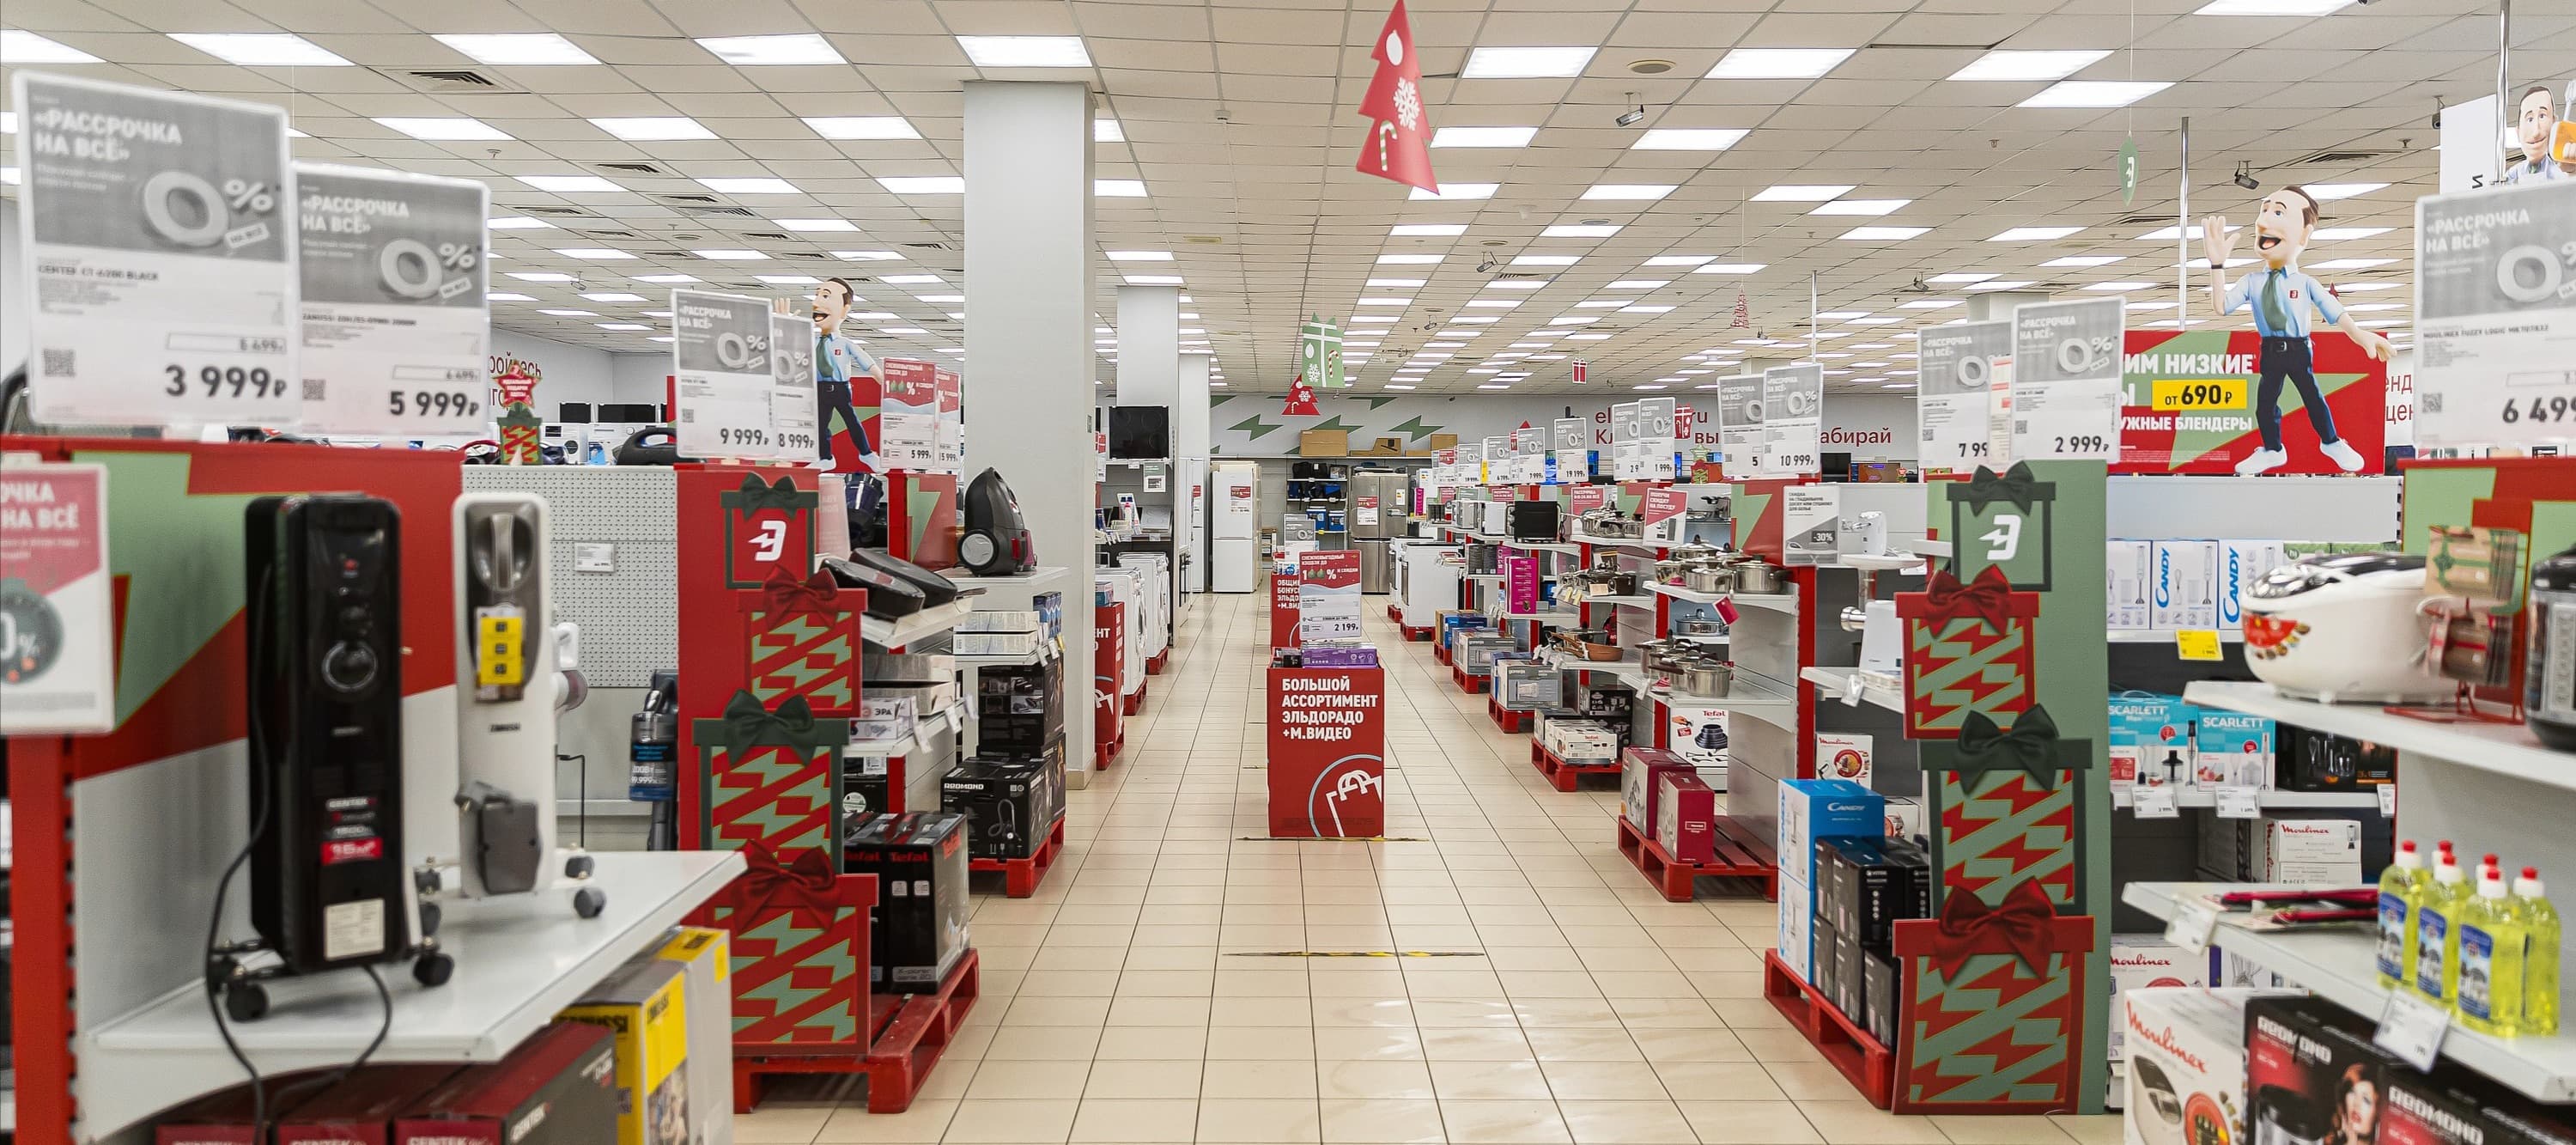 Фото новости: "Число магазинов электроники в России сократилось впервые за несколько лет"